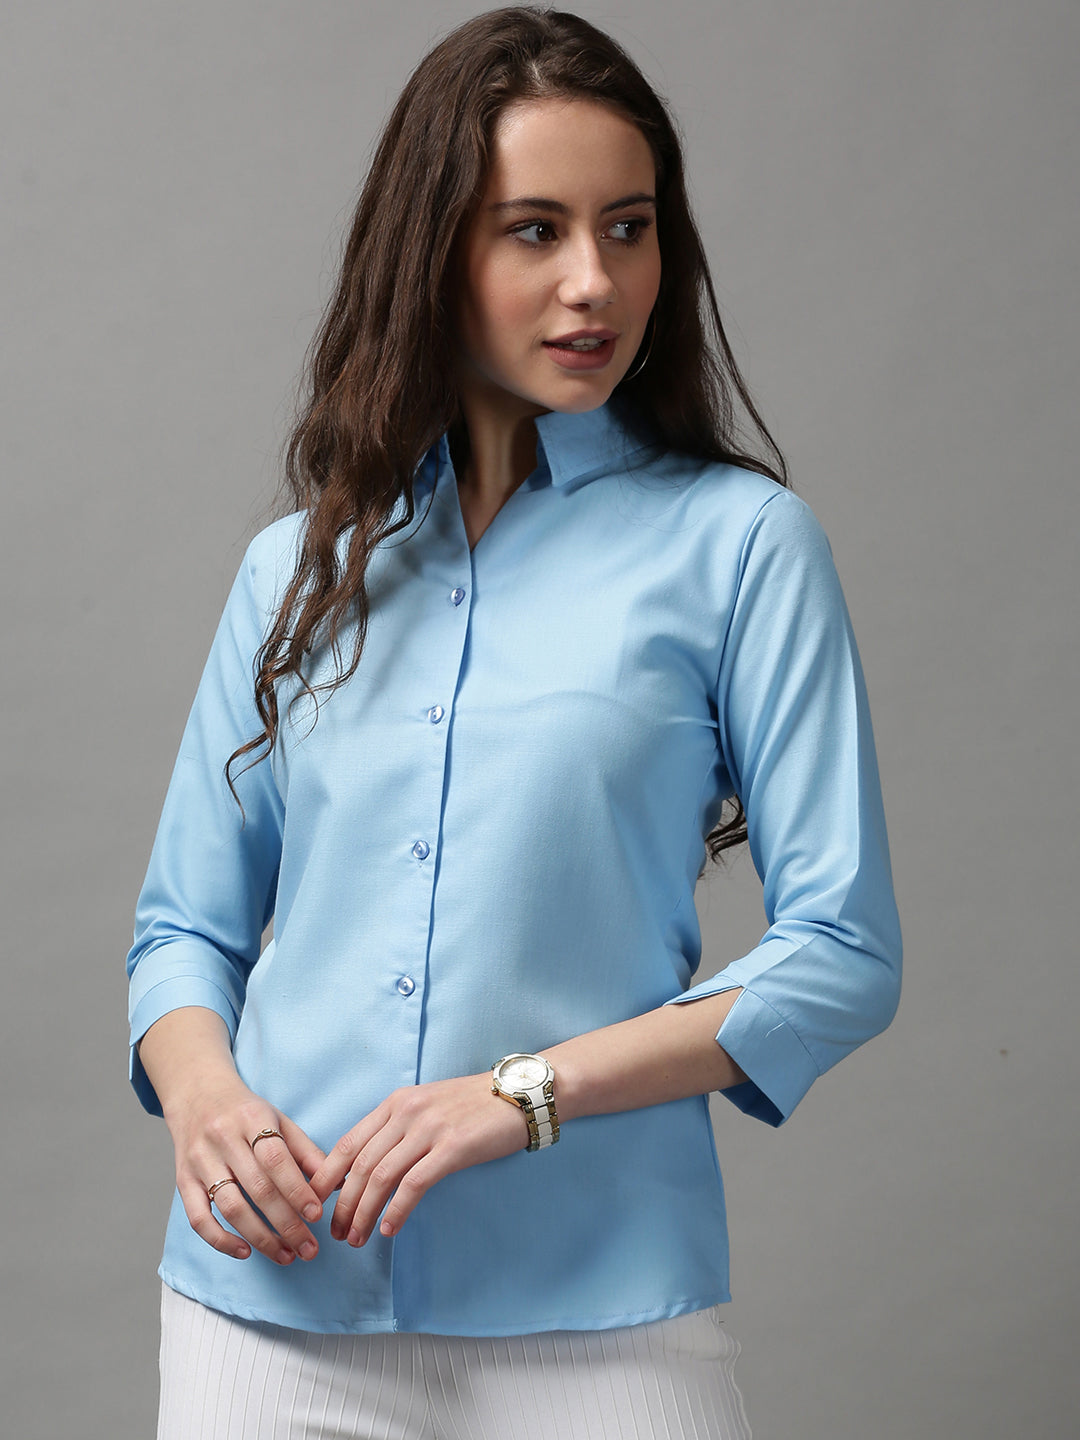 Women's Blue Solid Shirt